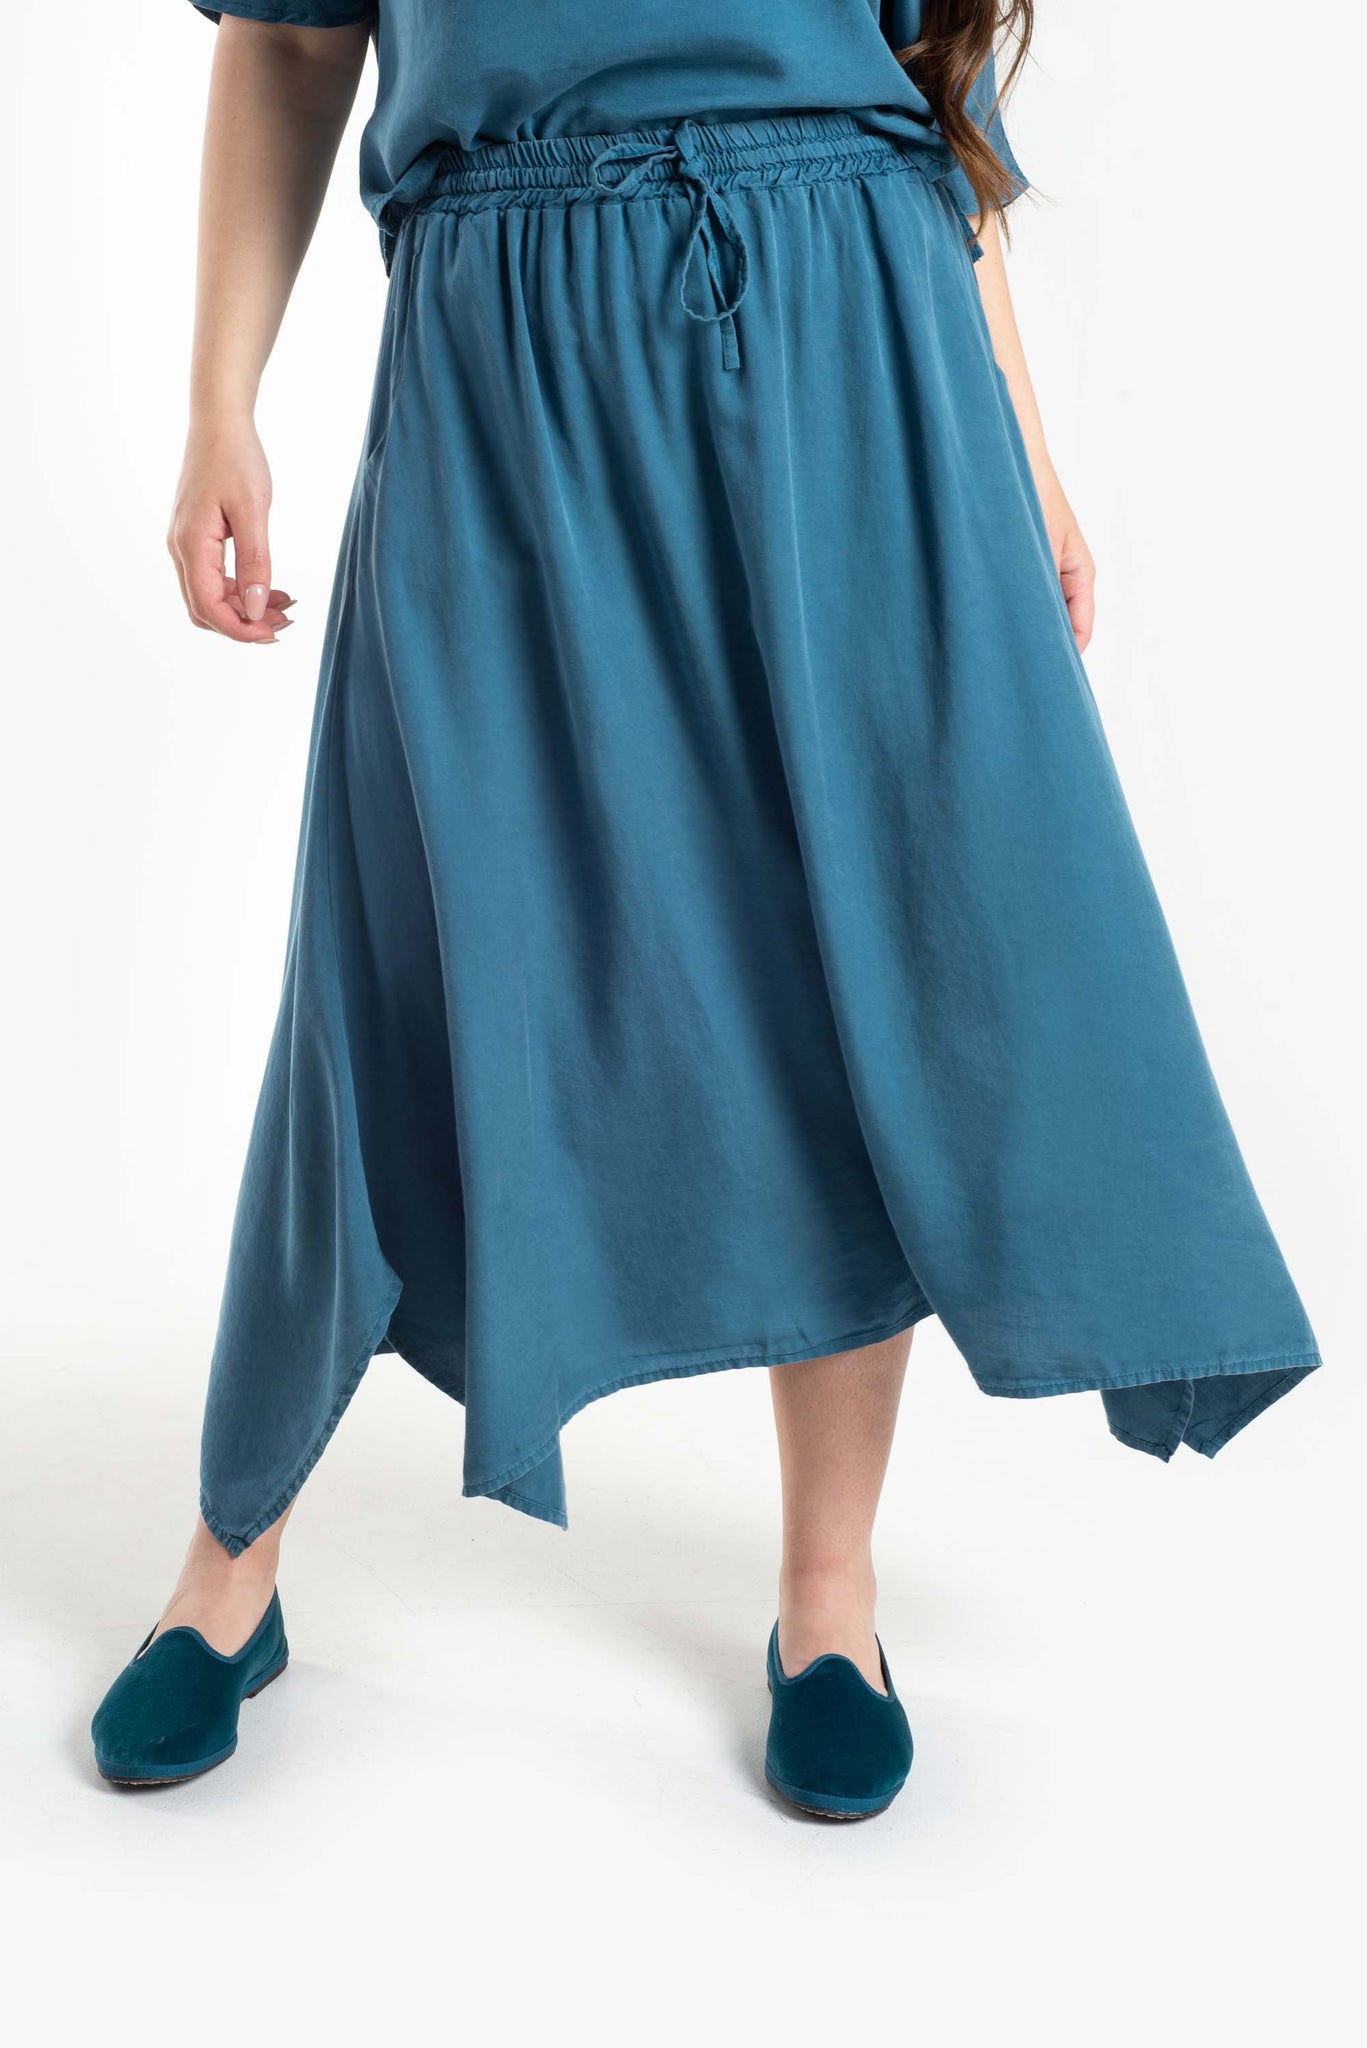 Tencel skirt